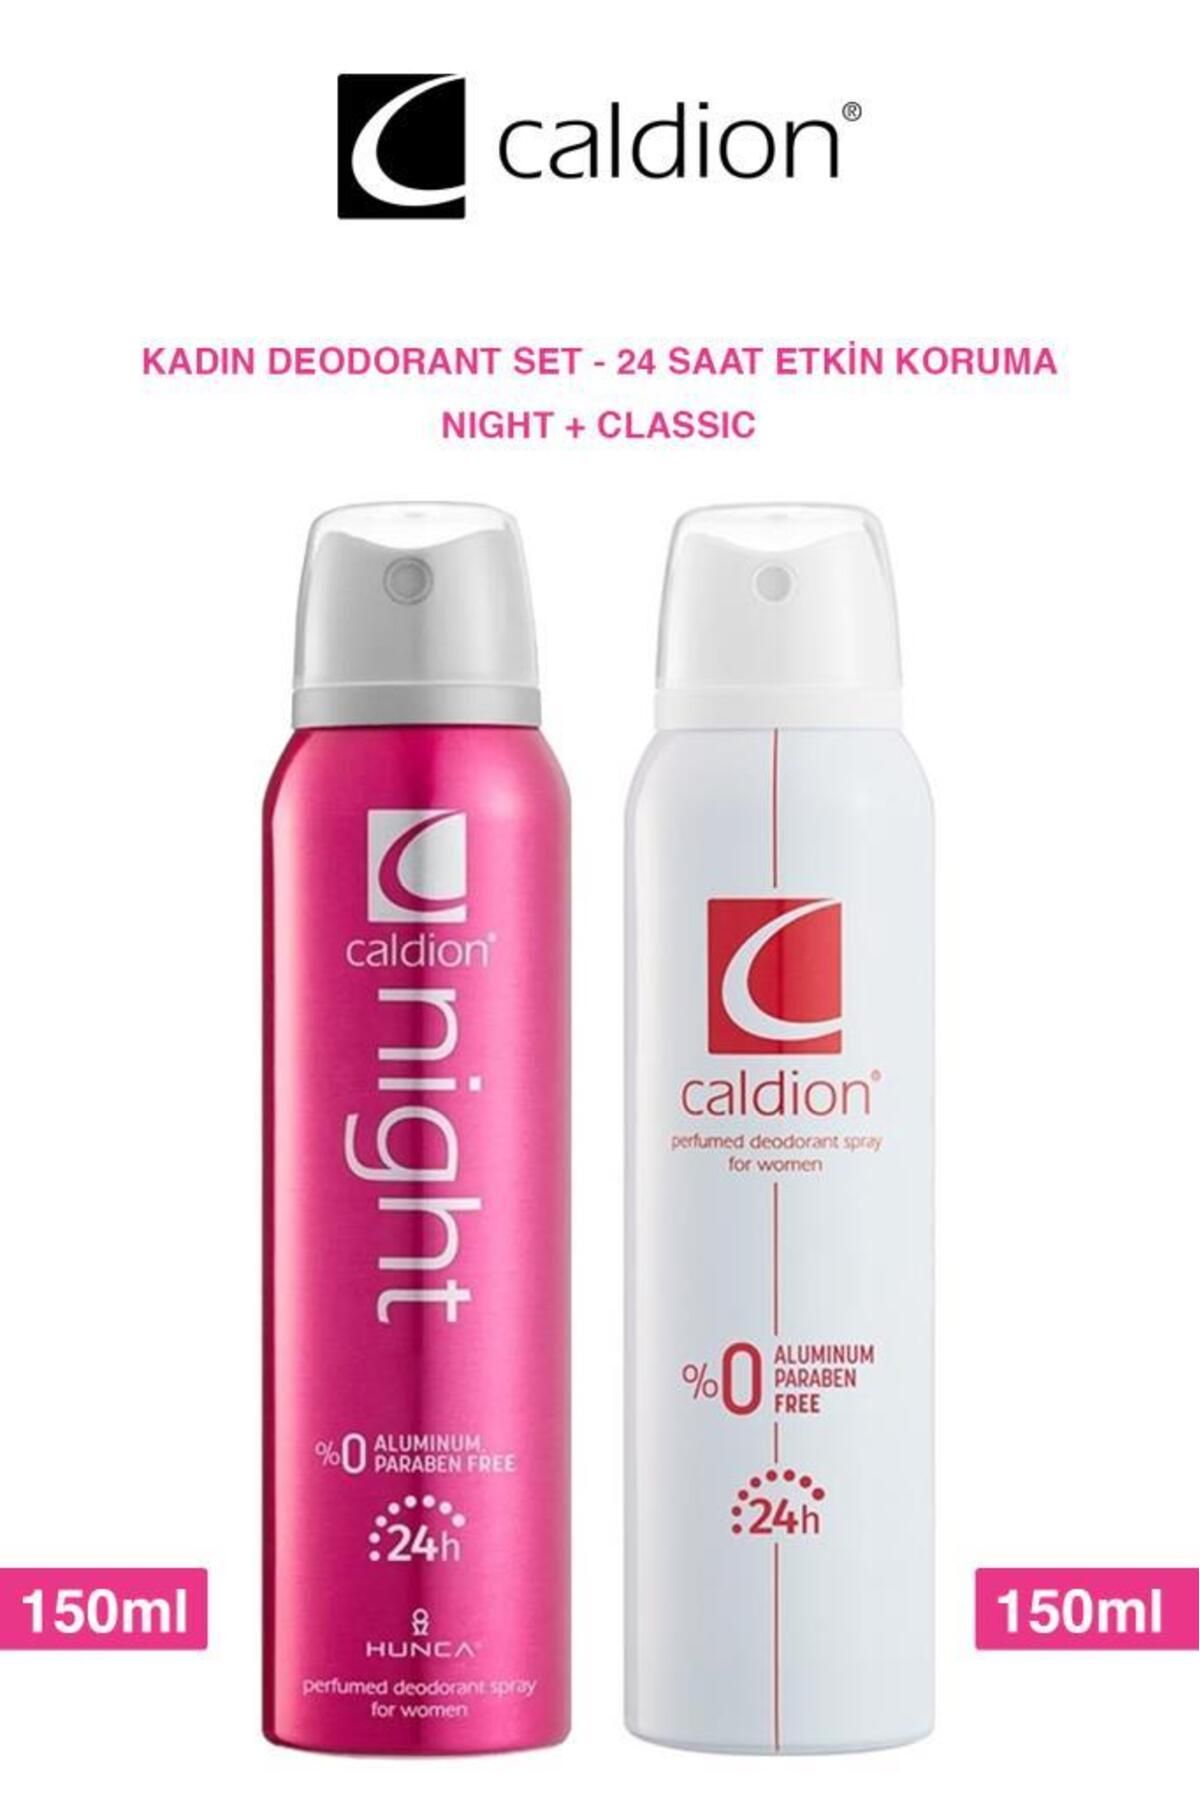 Caldion Night-Klasik Kadın Deodorant Seti